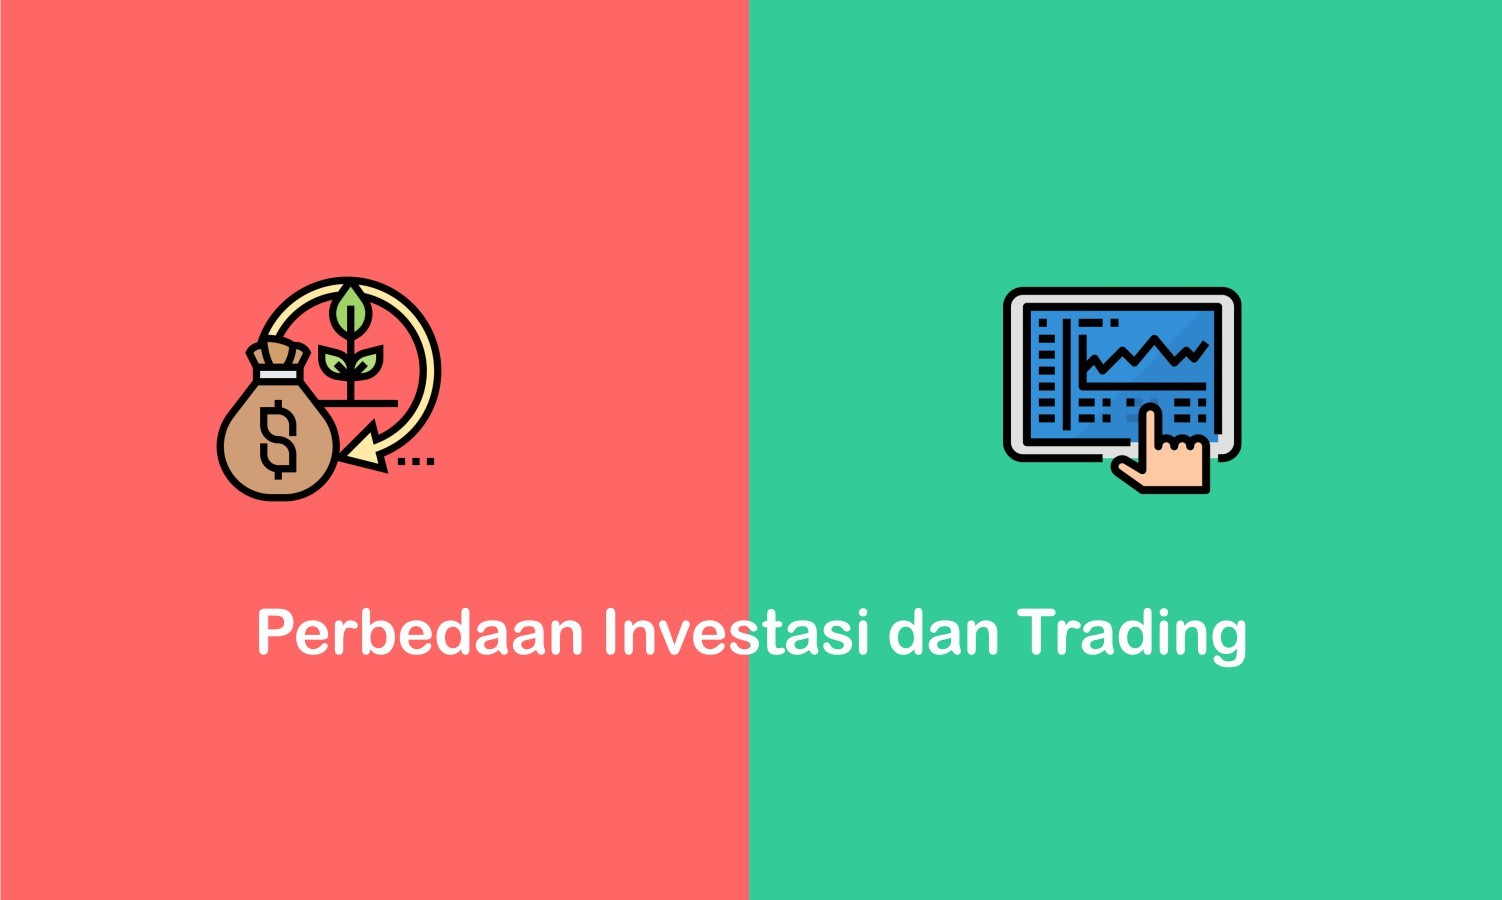 perbedaan investasi dan trading